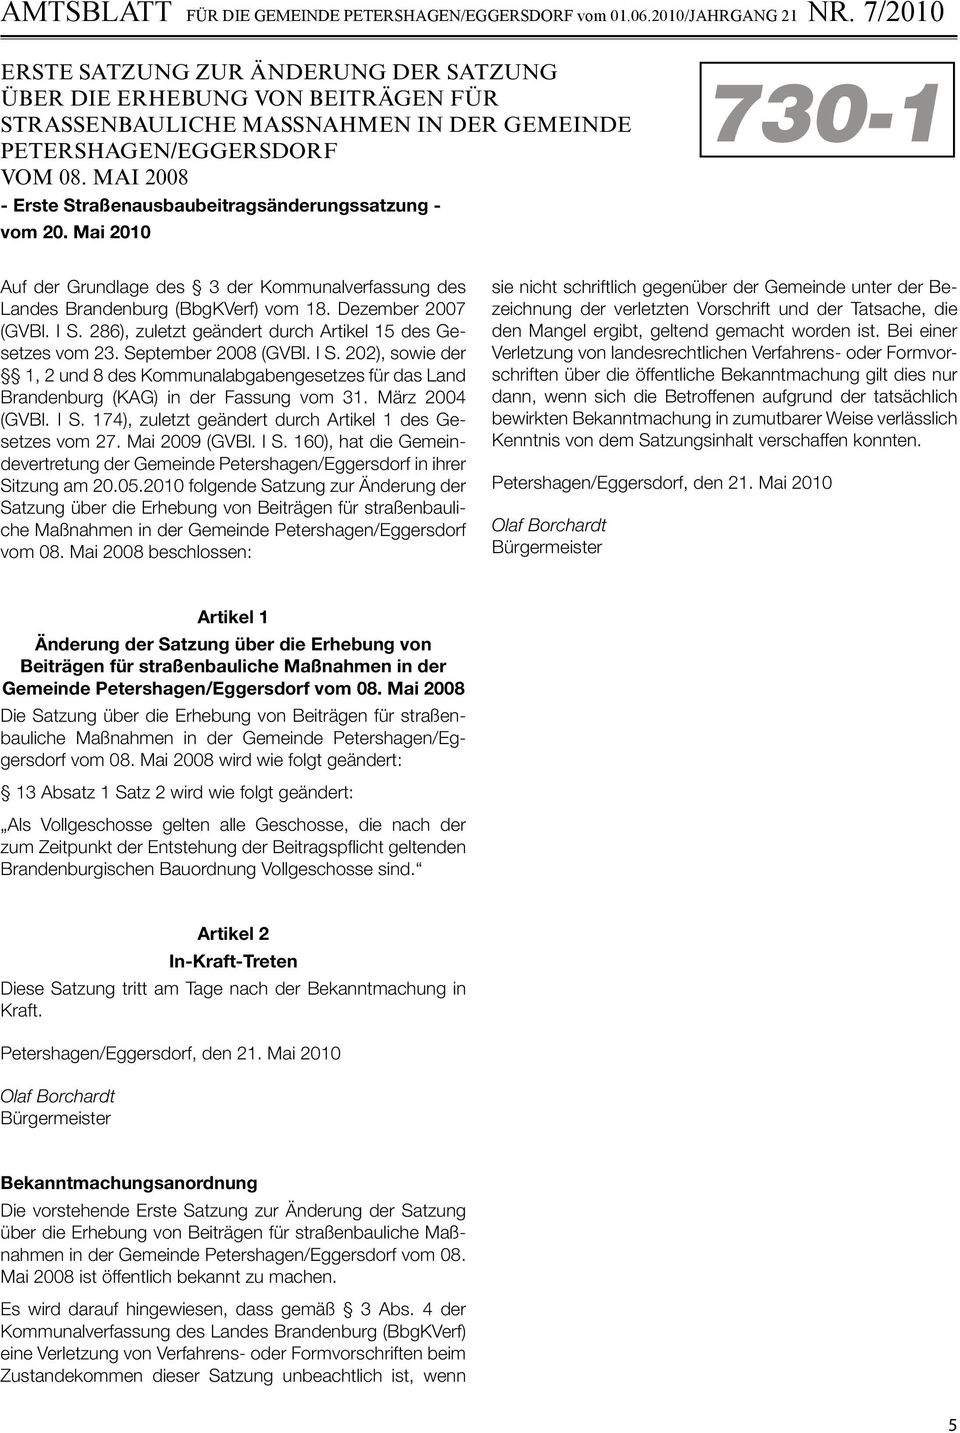 286), zuletzt geändert durch Artikel 15 des Gesetzes vom 23. September 2008 (GVBl. I S. 202), sowie der 1, 2 und 8 des Kommunalabgabengesetzes für das Land Brandenburg (KAG) in der Fassung vom 31.